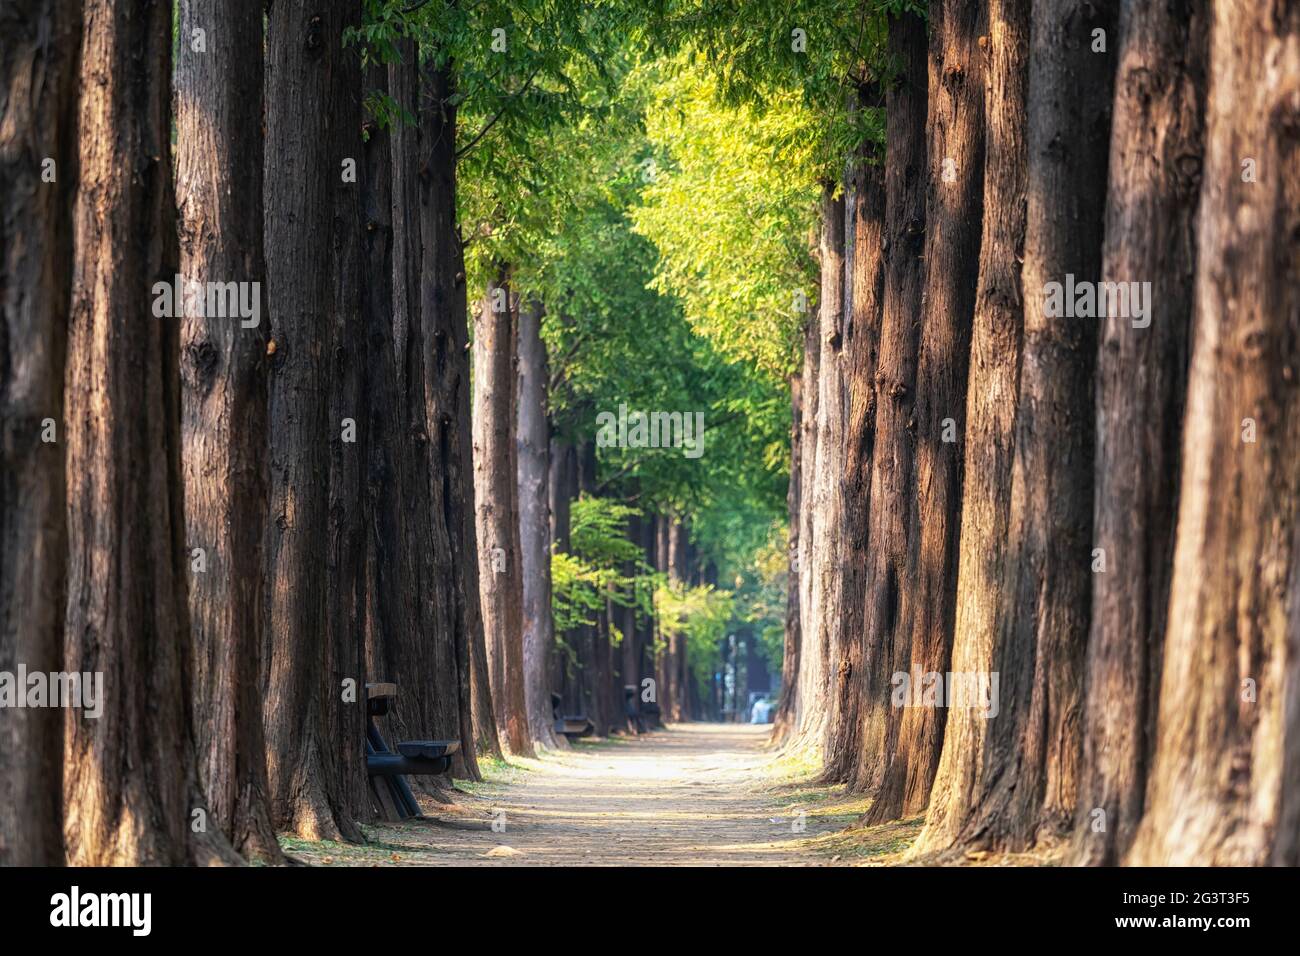 metasequoia road